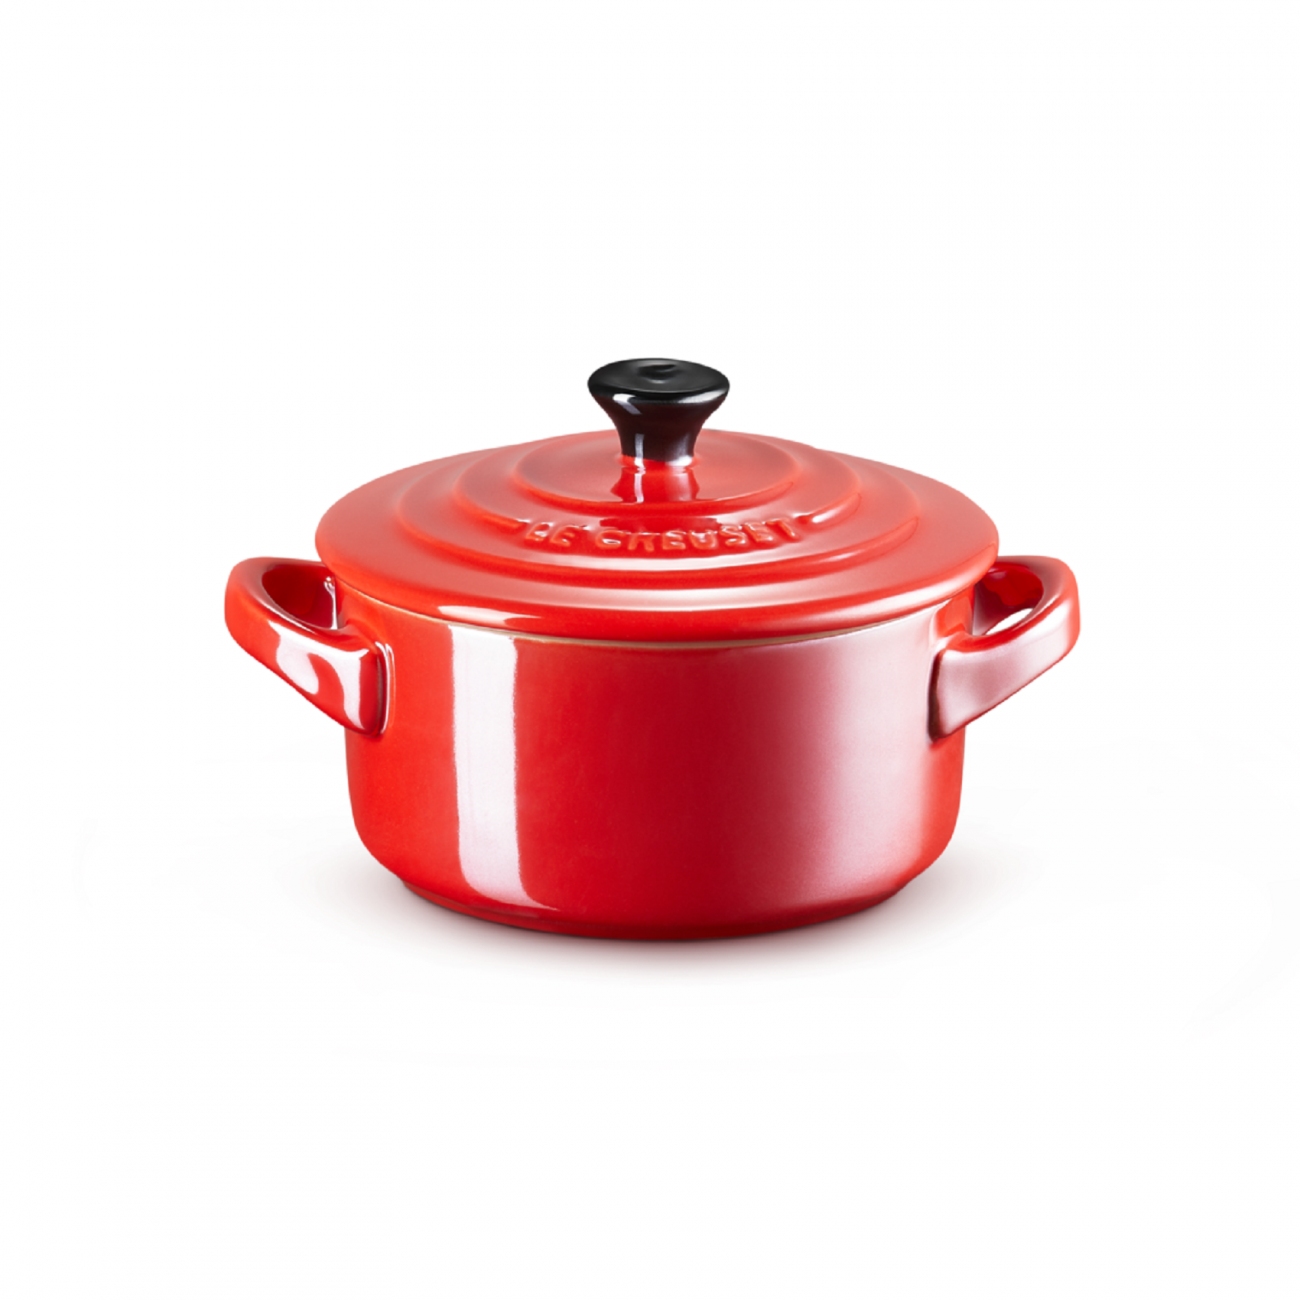 Le Creuset Red Heart Shaped Cocotte Dutch Oven 1L Cast Iron Dish Pot